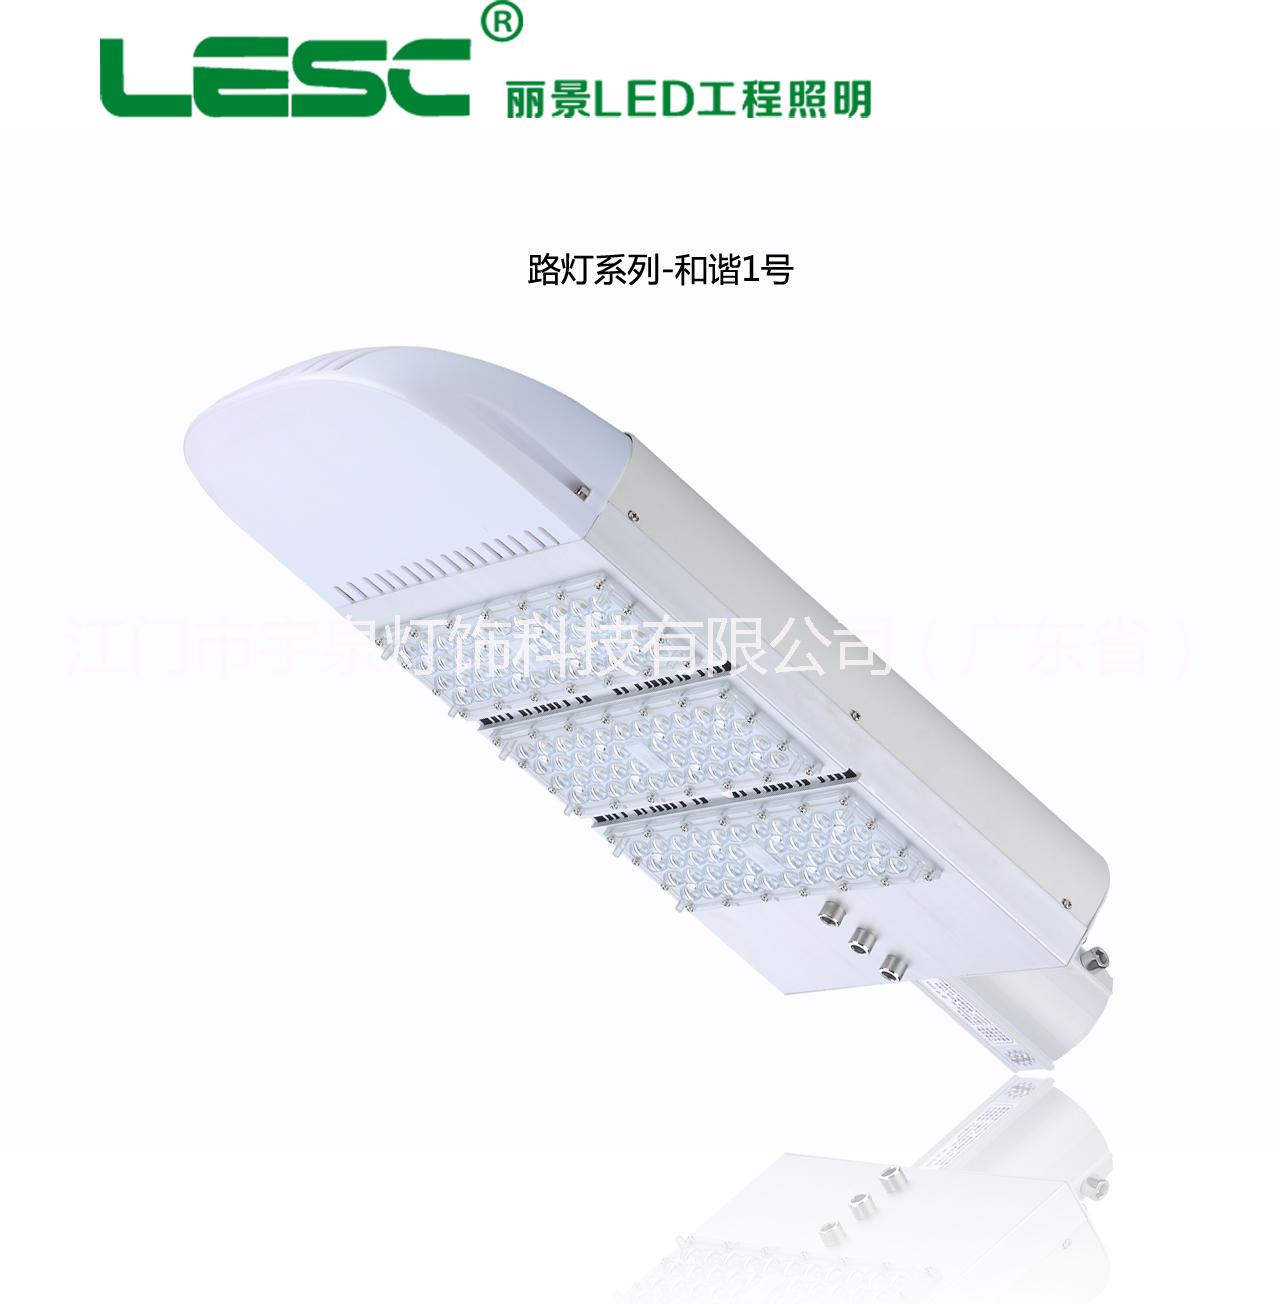 广东江门厂家供应大功率LED路灯照明热销新型节能环保路灯系列和谐一号